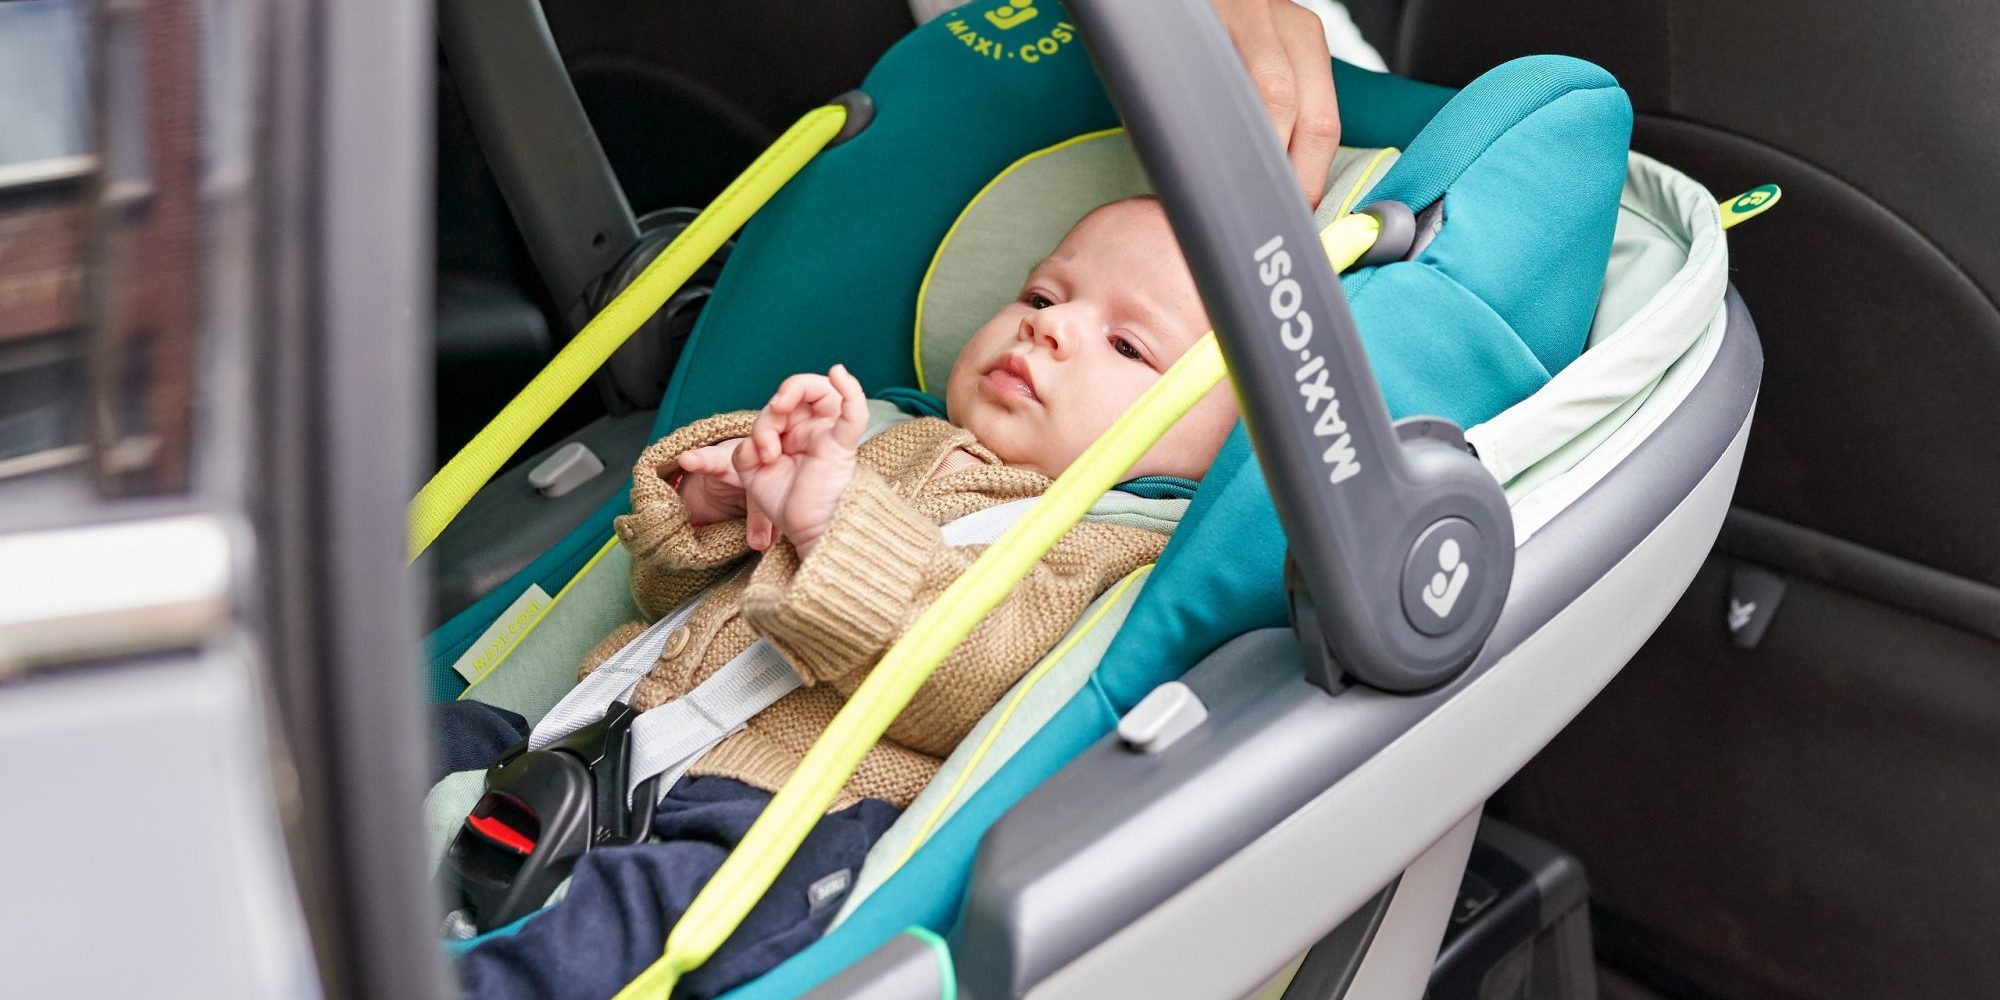 Η ασφάλεια του μωρού μας είναι η προτεραιότητά μας Ταξιδέψτε με το μωρό σας με ασφάλεια, με το νέο κάθισμα Coral i-size.